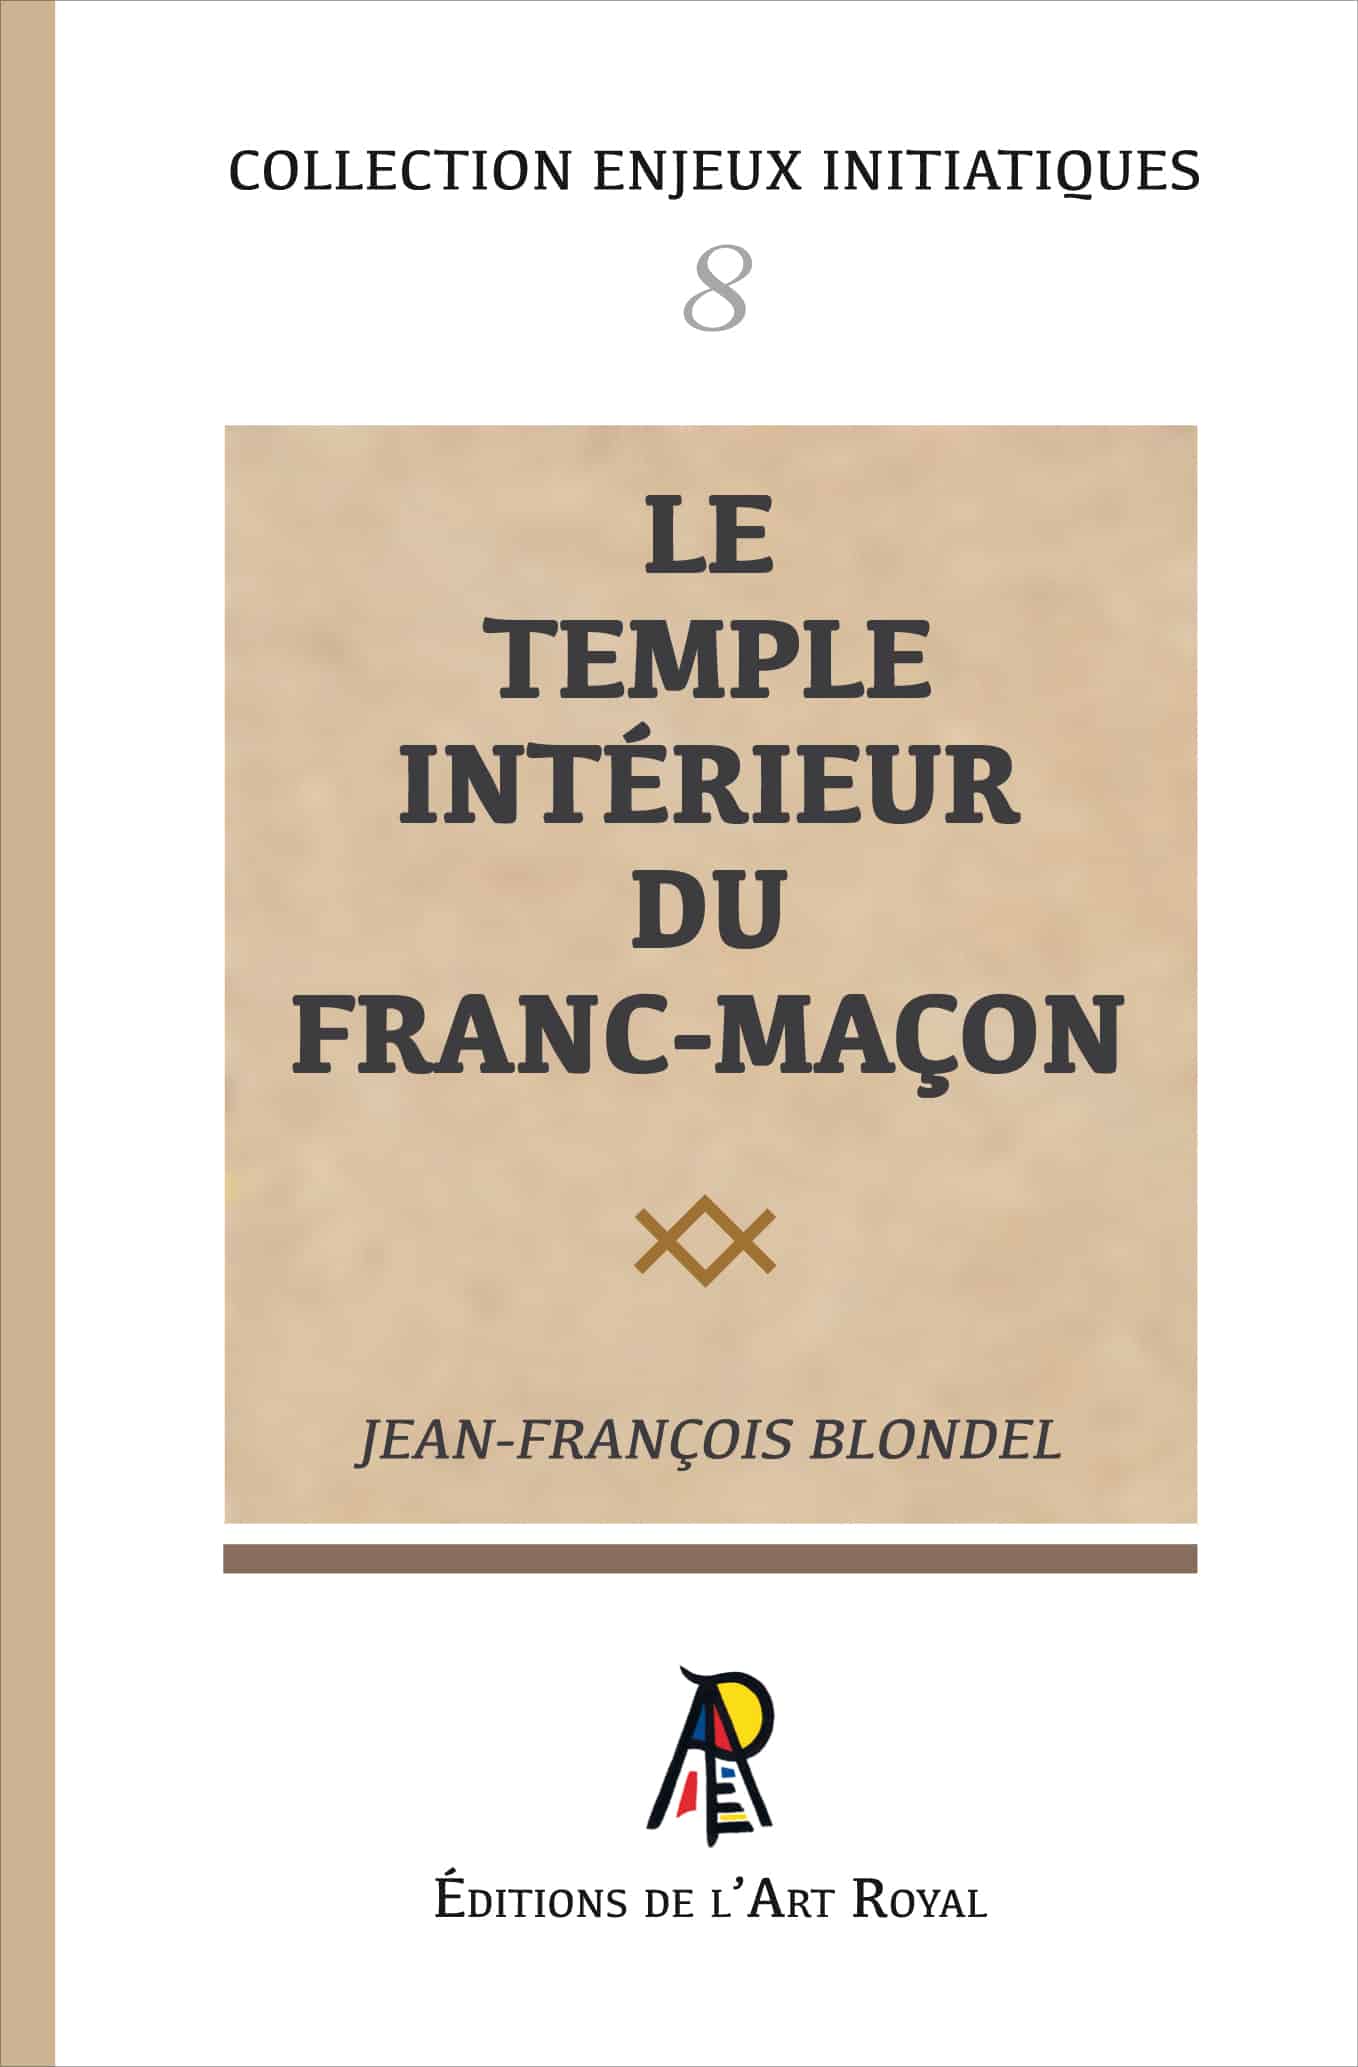 Le Temple Intérieur du franc-maçon, Jean-François Blondel